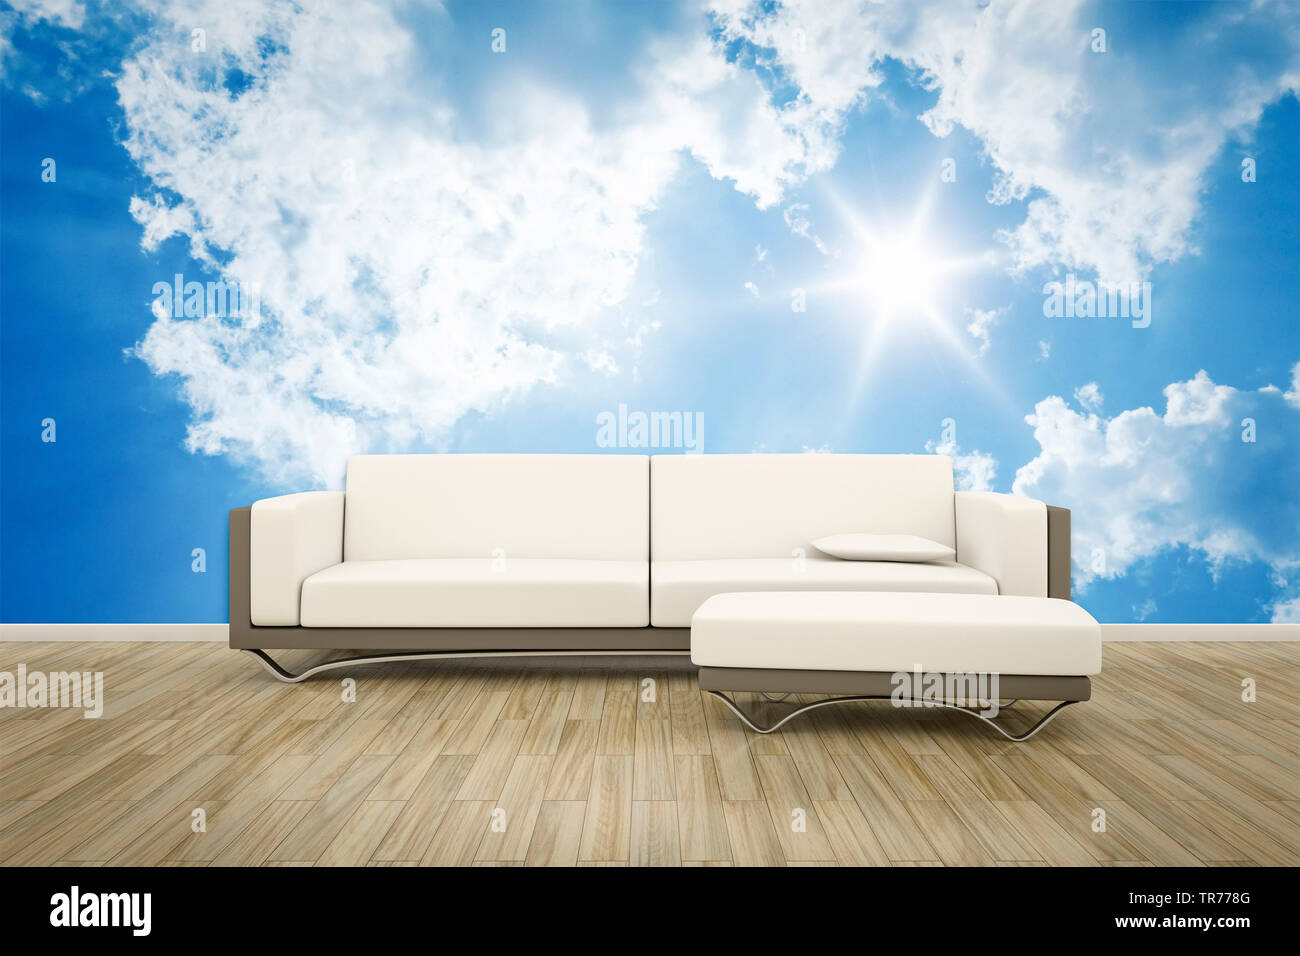 3D Computer Grafik, Innenarchitektur mit leder Sofa in der Farbe Weiß gegen eine fotografische Tapete mit Cloud Motiv Stockfoto